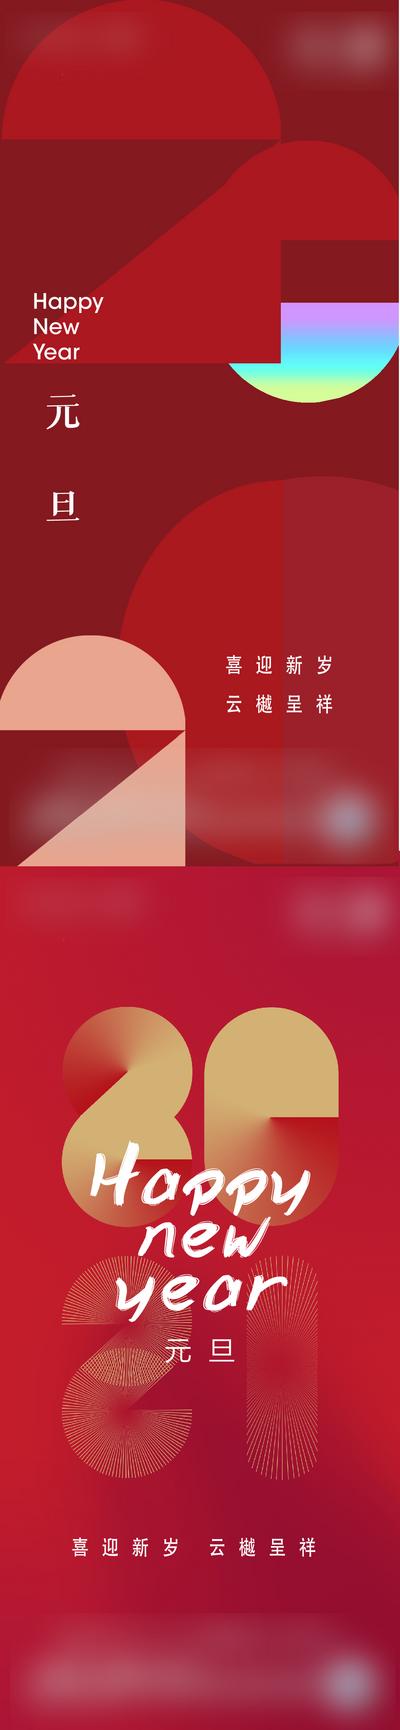 南门网 海报 公历节日 元旦 新年 红色 系列